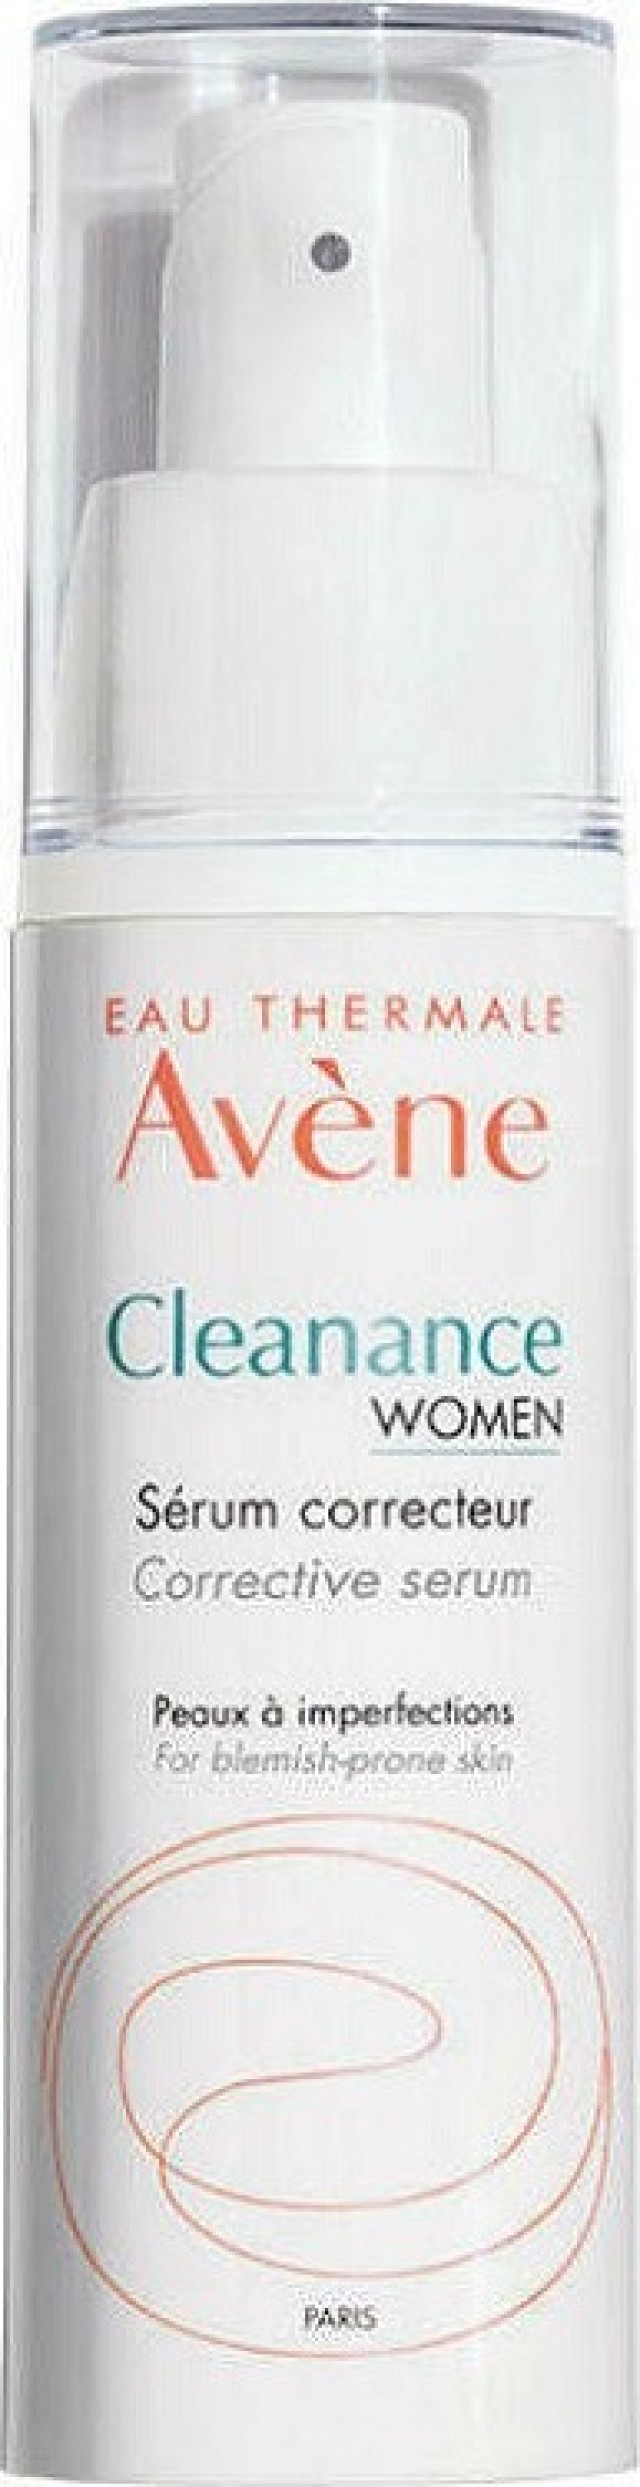 Avene Cleanance Women Διορθωτικός Ορός για Δέρμα με Ατέλειες & Σημάδια Ακμής 30ml